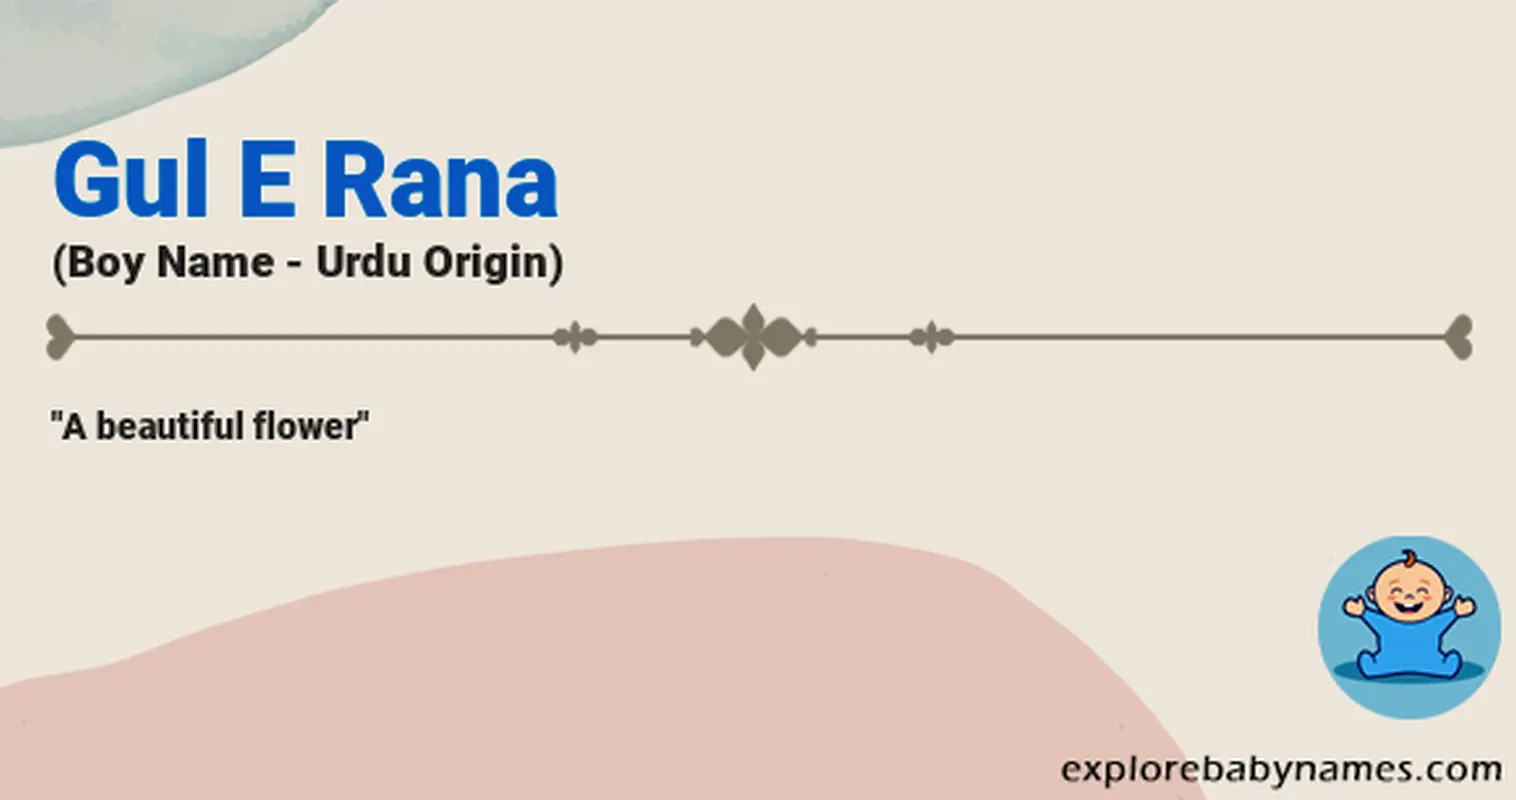 Meaning of Gul E Rana